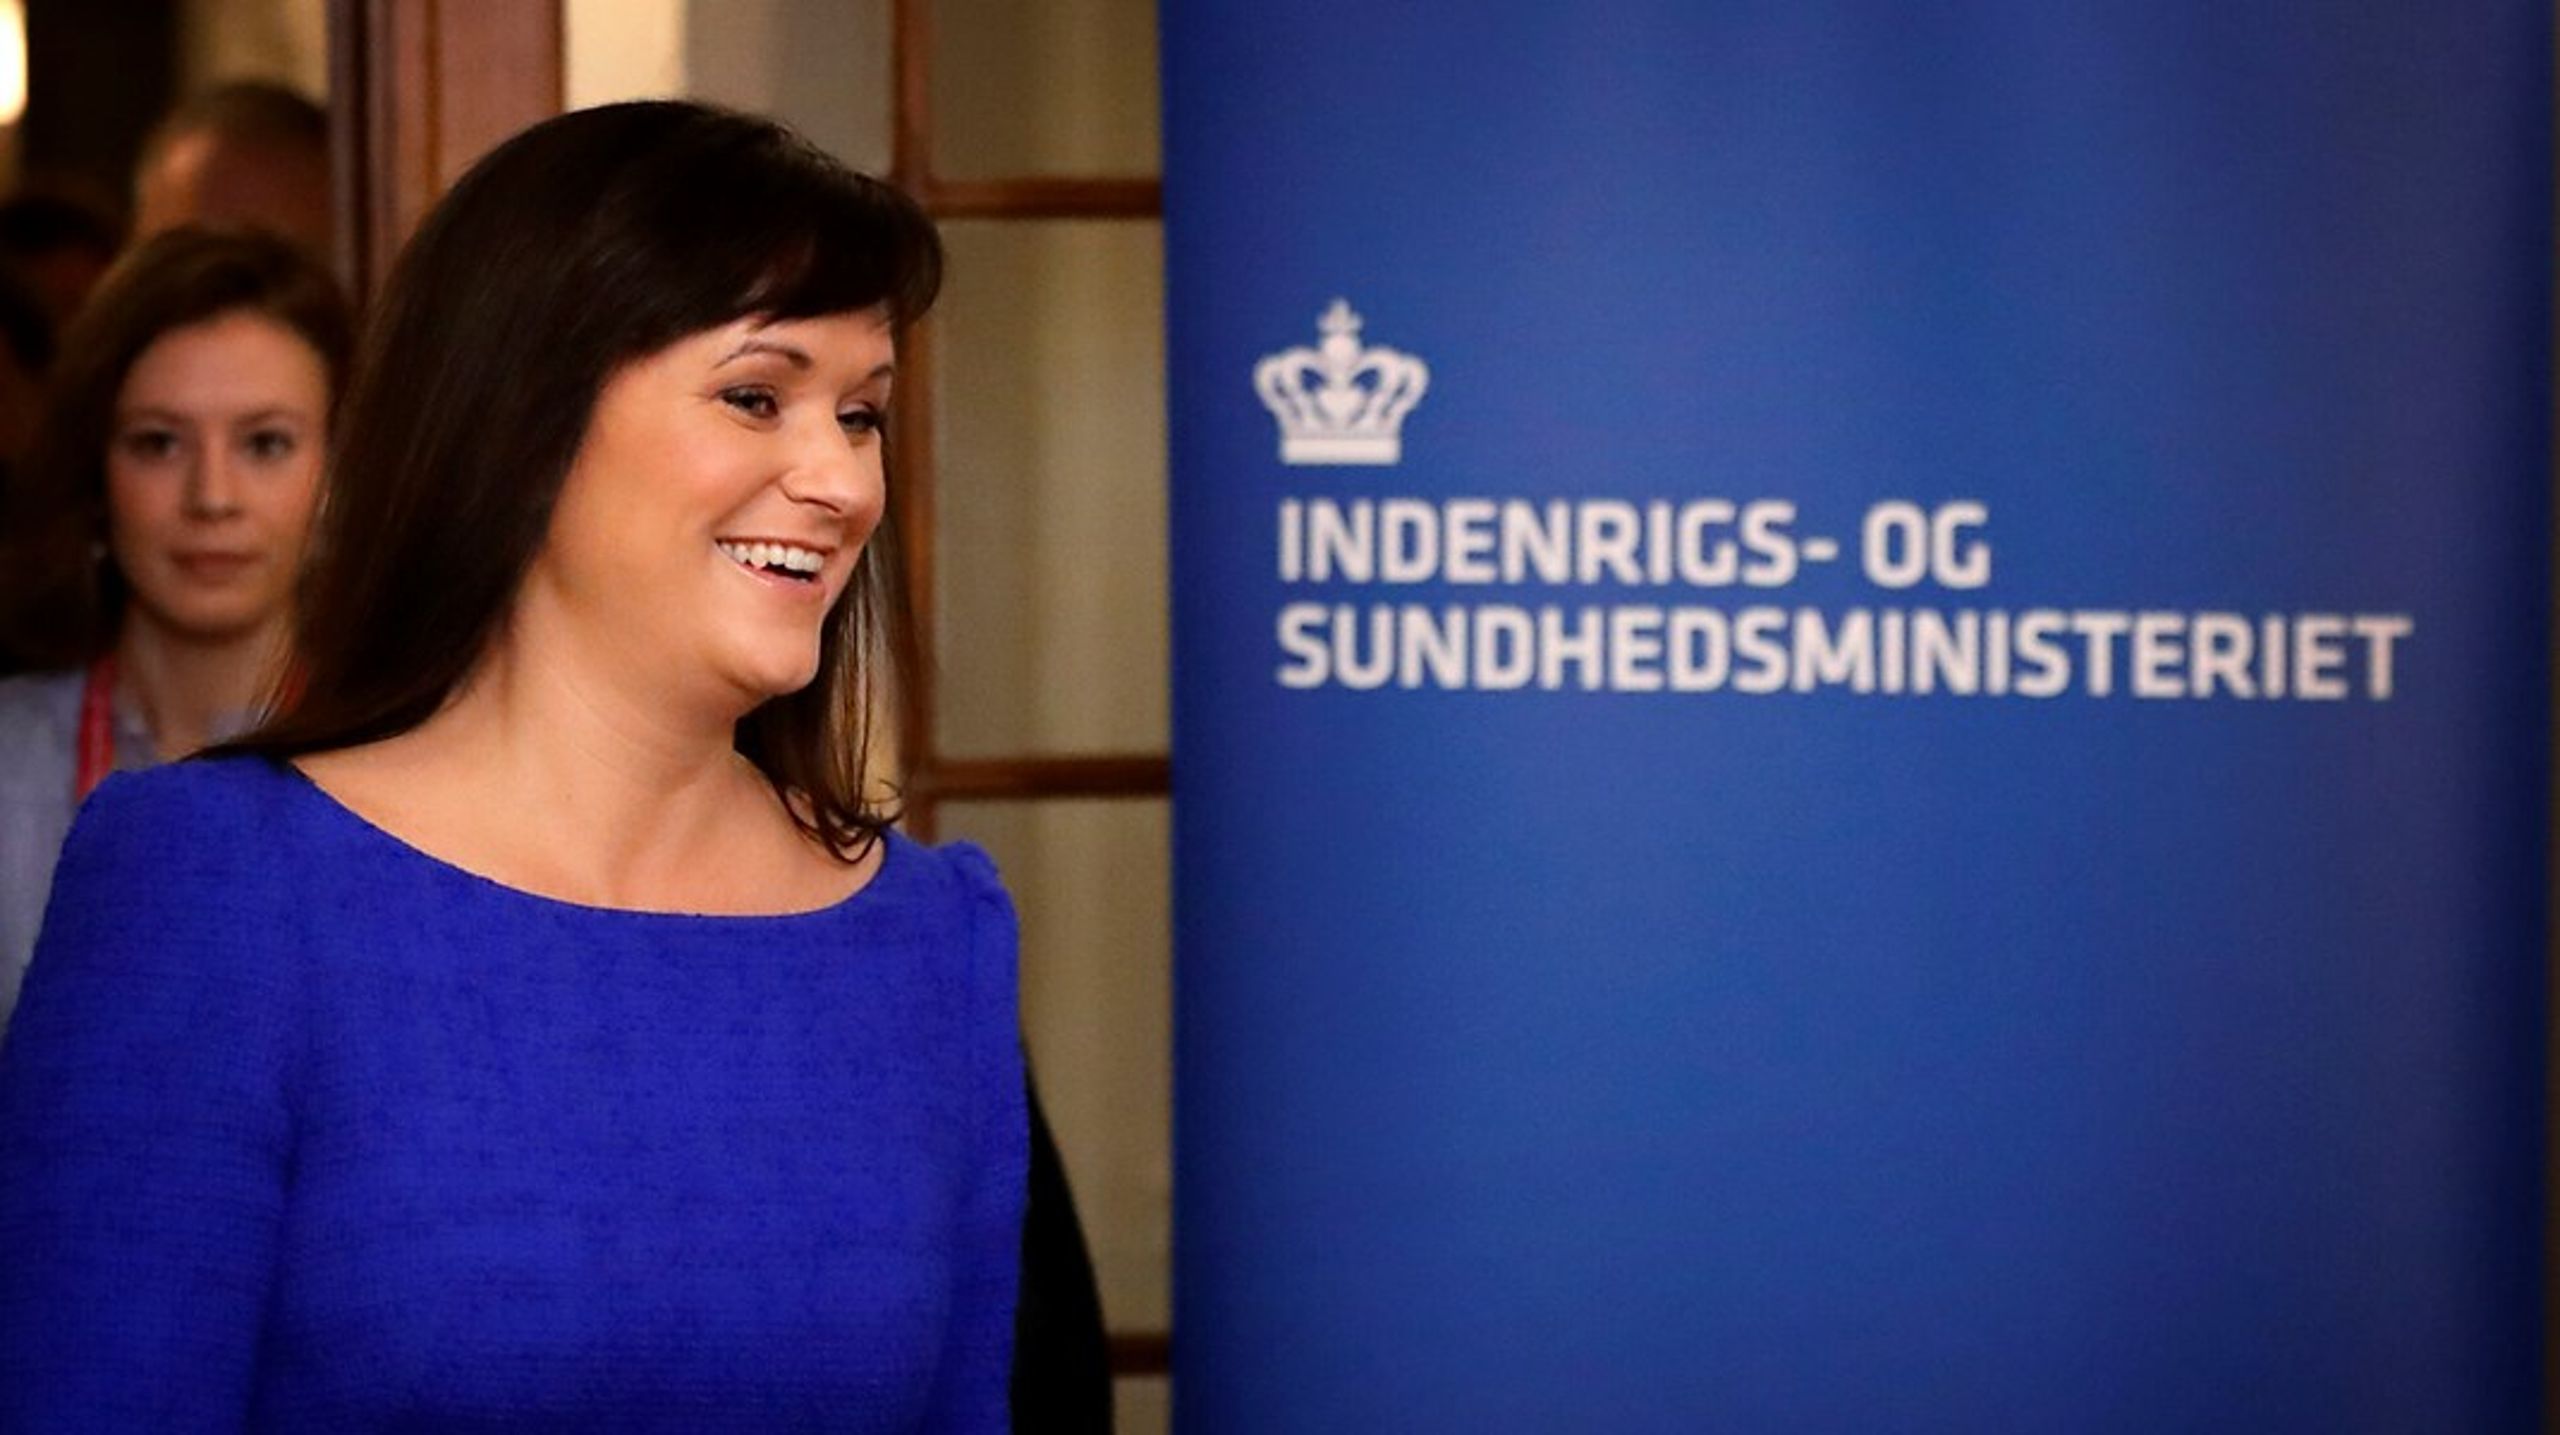 Indenrigs- og sundhedsminister Sophie Løhde (V) præsenterer senere i år et lovforslag, der muliggør gratis fertilitetsbehandling til dem, der ønsker sig barn nummer to. Regeringen forventer, at tilbuddet træder i kraft i december i år.